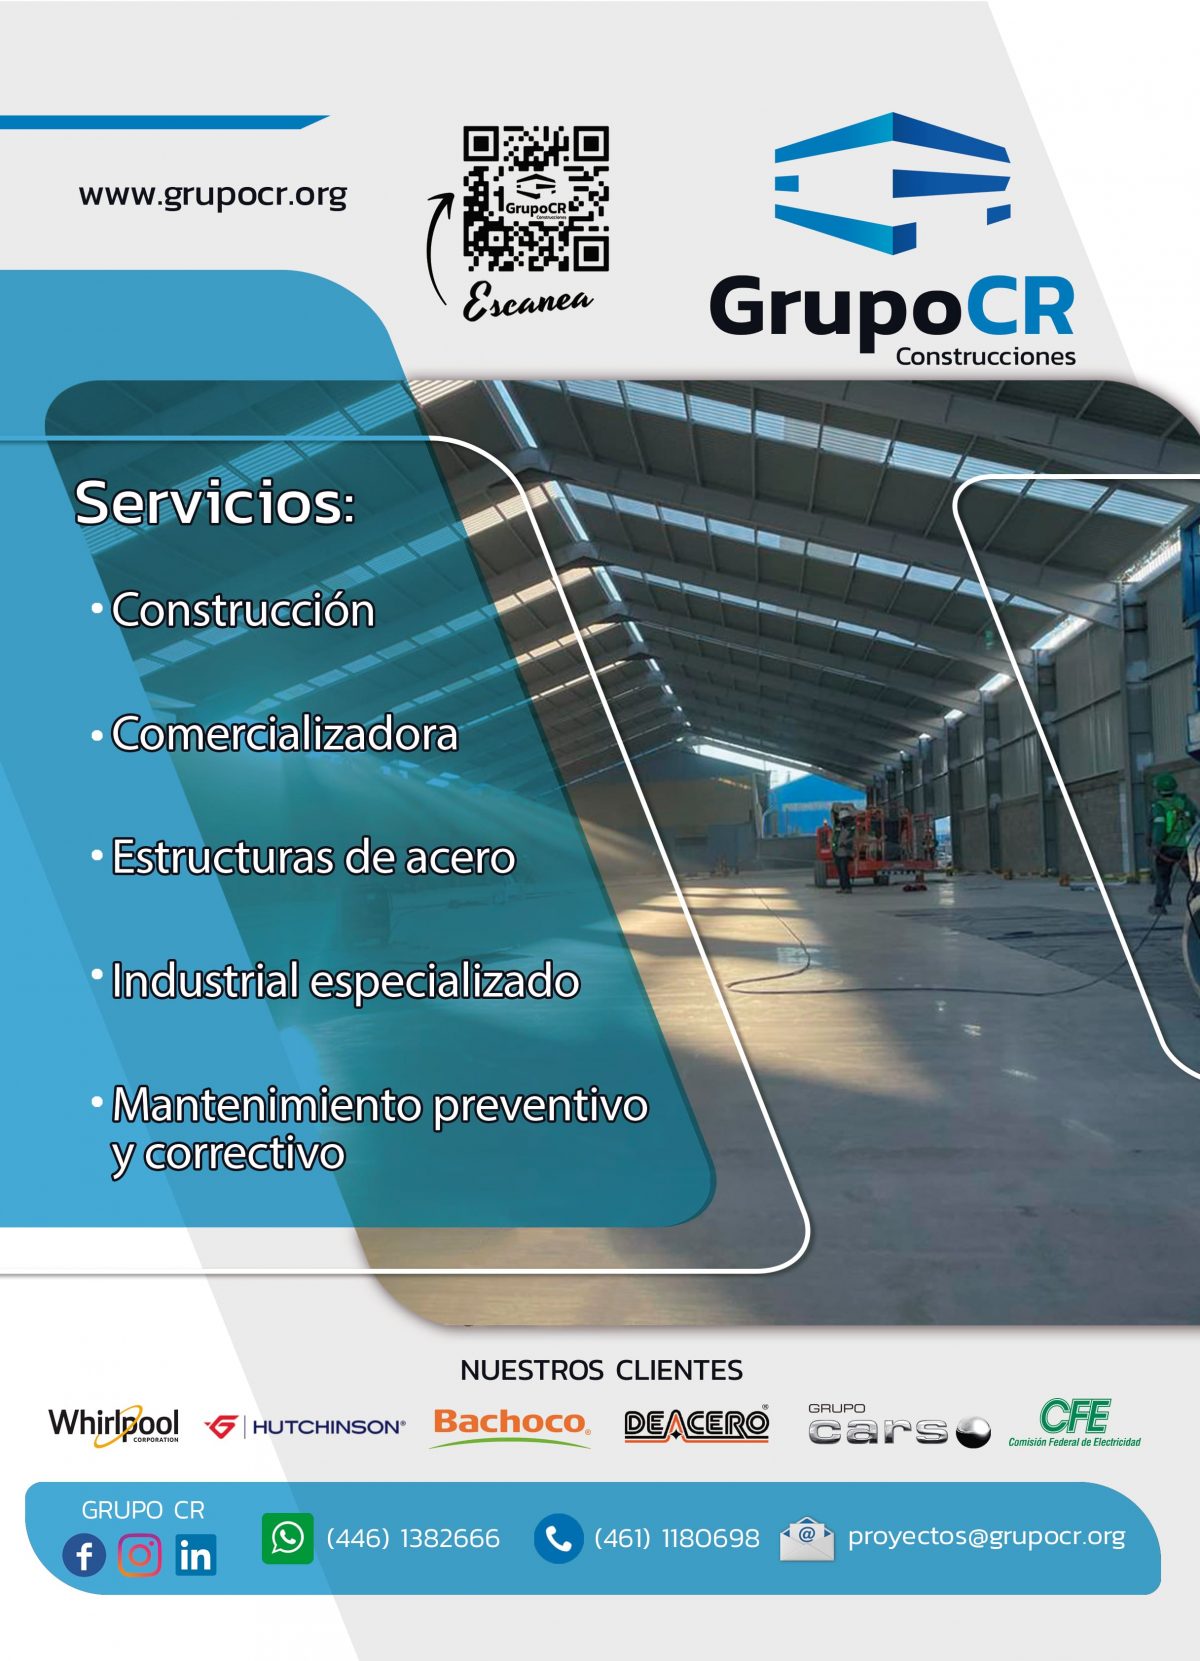 Grupo CR Construcciones expertos en soluciones de la construcción